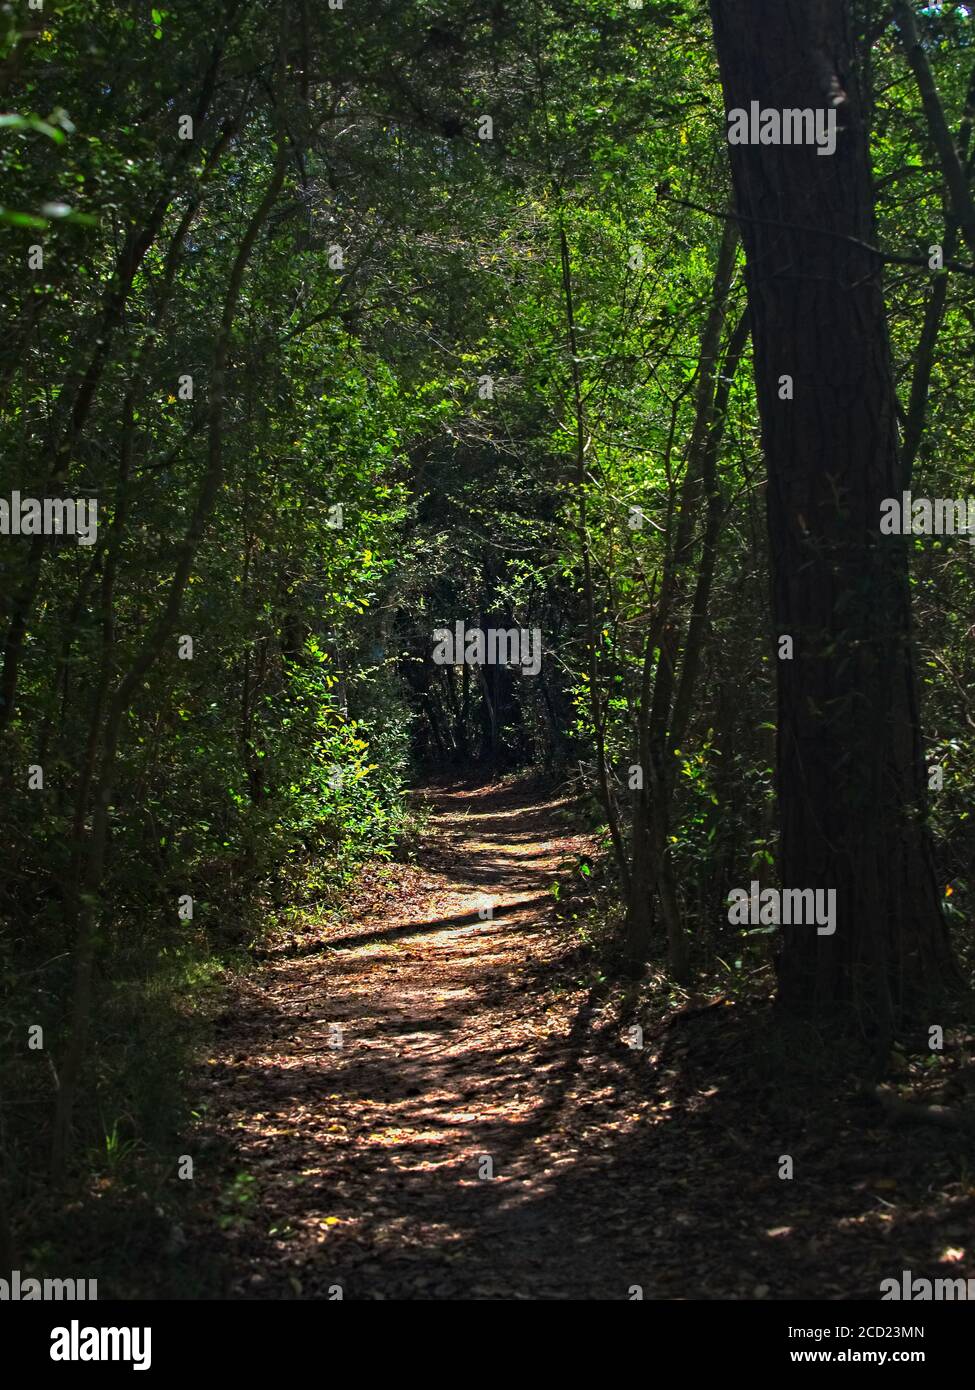 The Woodlands TX USA - 02-28-2020 - Trail in Woods Mit grünen Bäumen Stockfoto